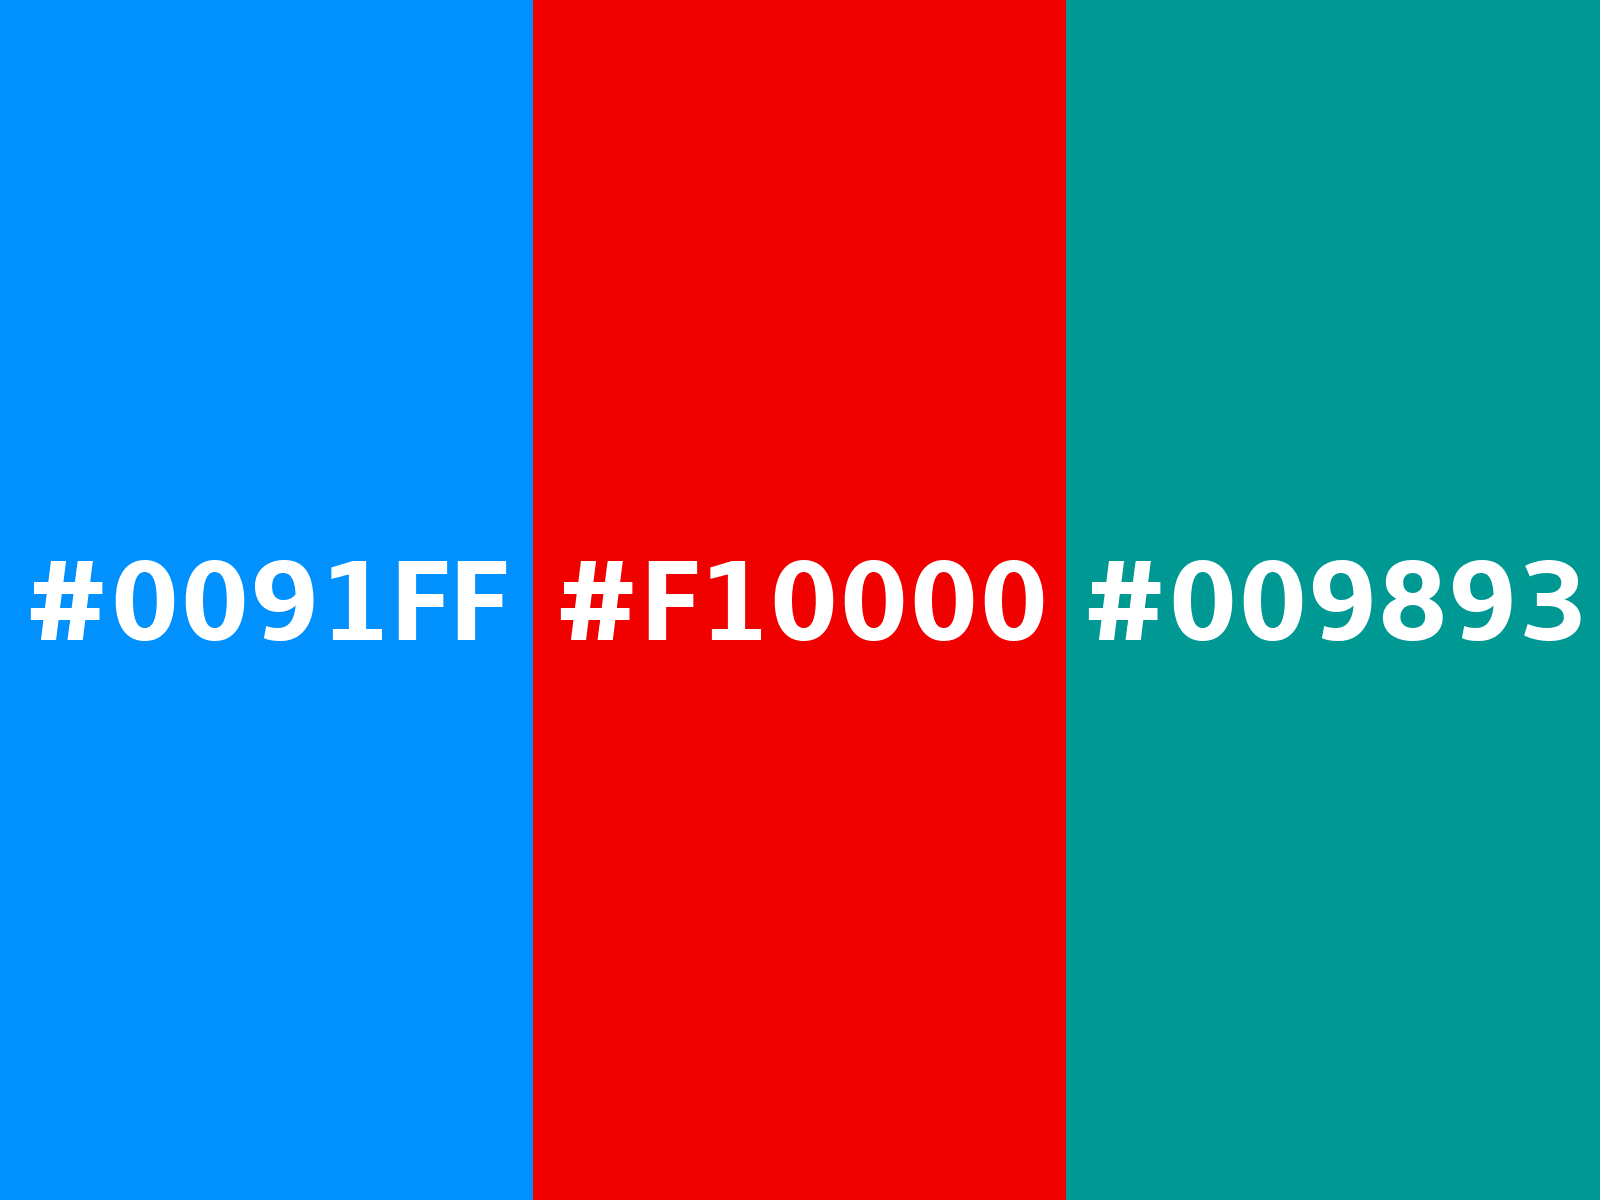 f10000